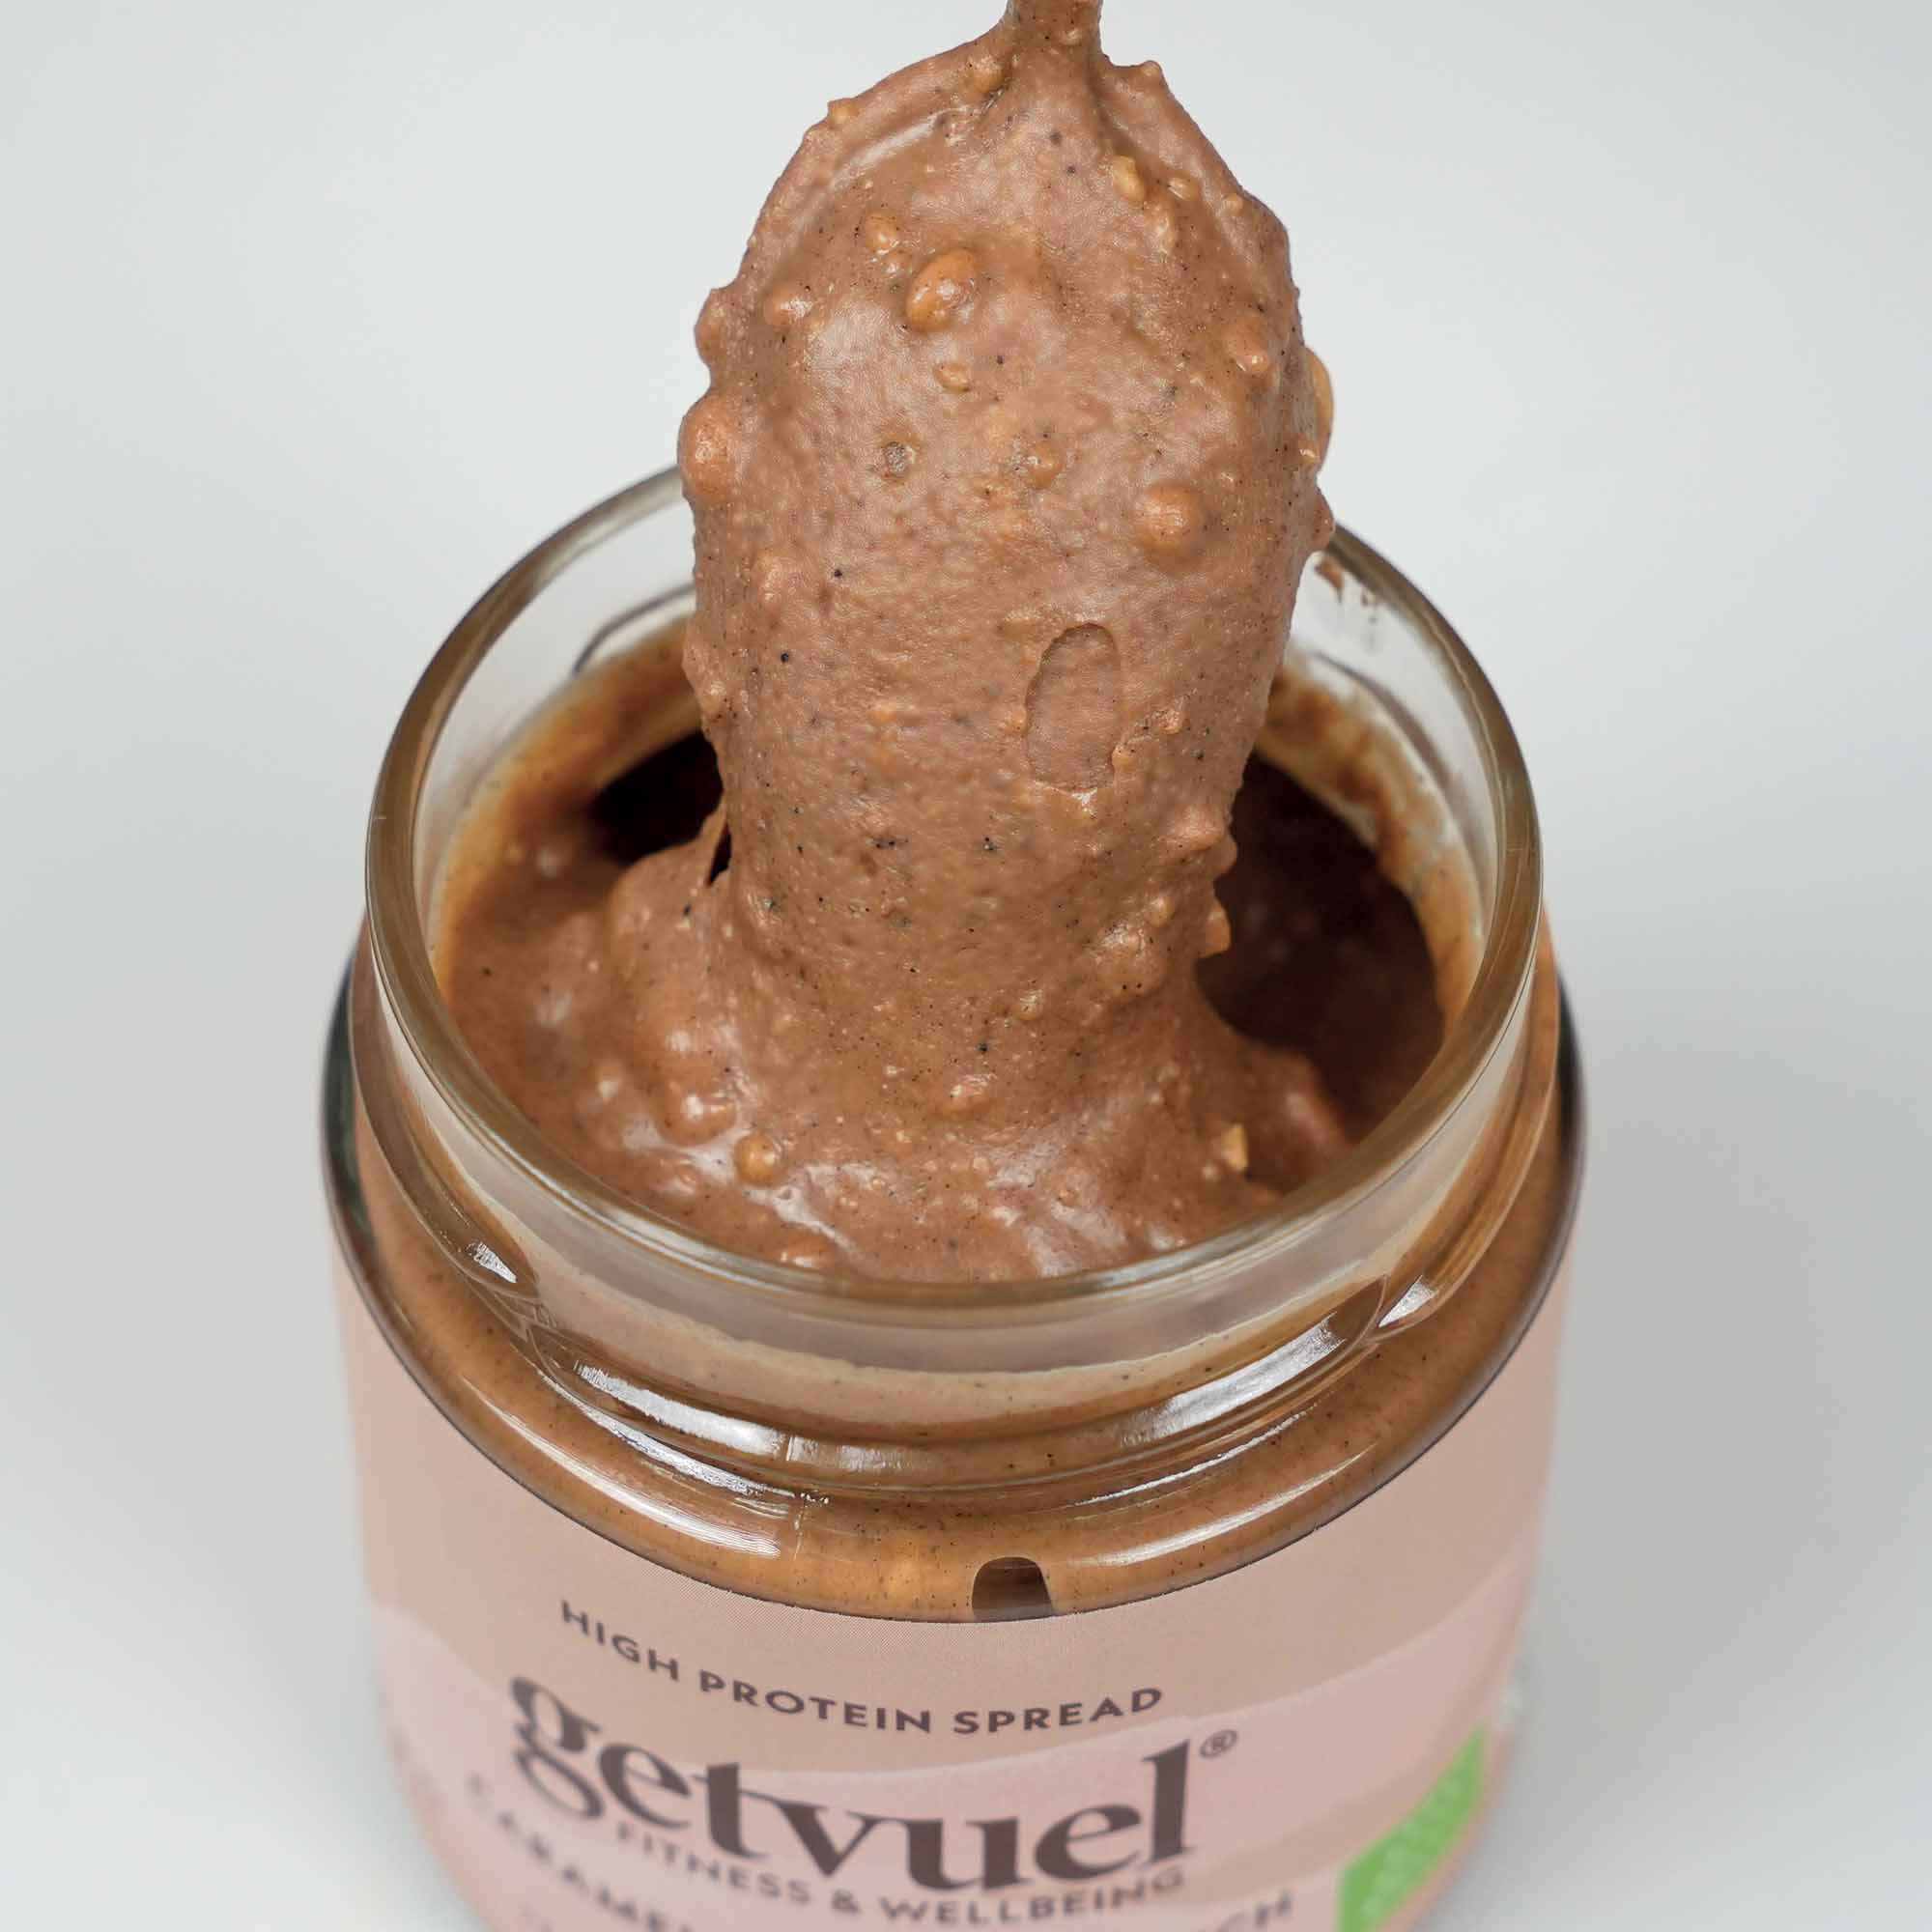 Organic - Caramel Peanut Crunch High Protein Spread